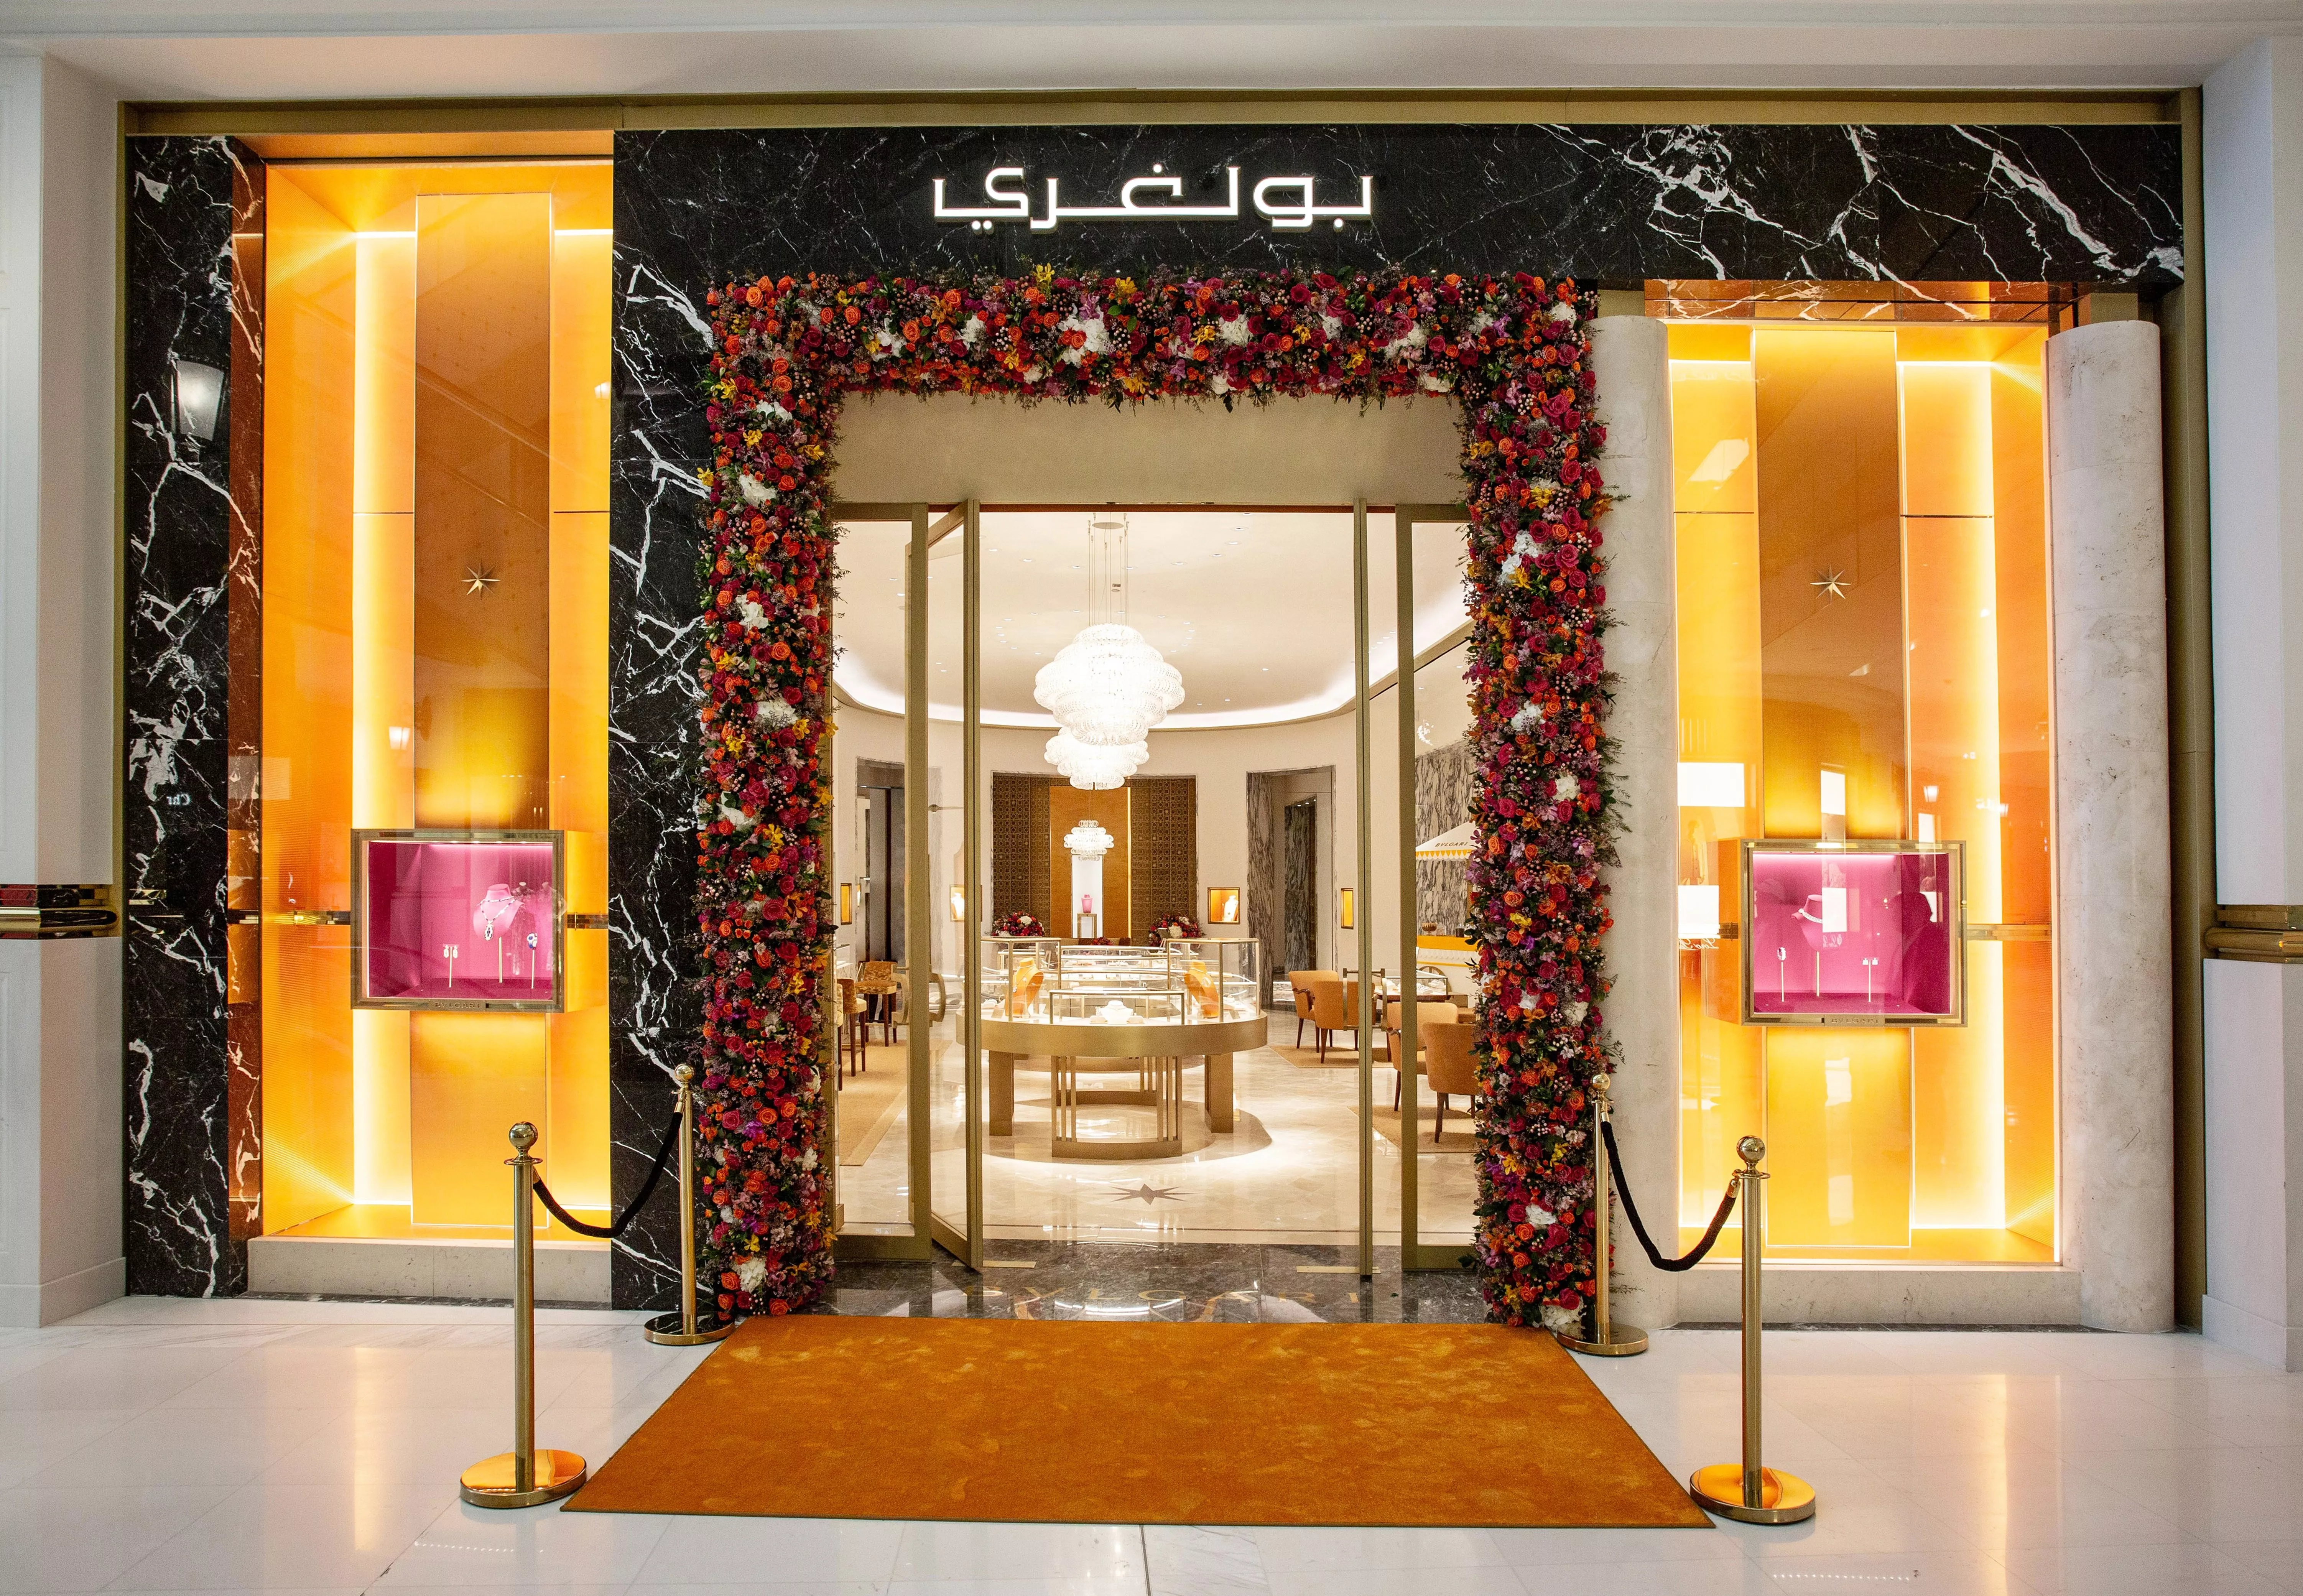 بولغري تستضيف معرضاً بعنوان الجمال الأزلي، بمناسبة افتتاح متجرها الجديد في مول بلاس فاندوم قطر